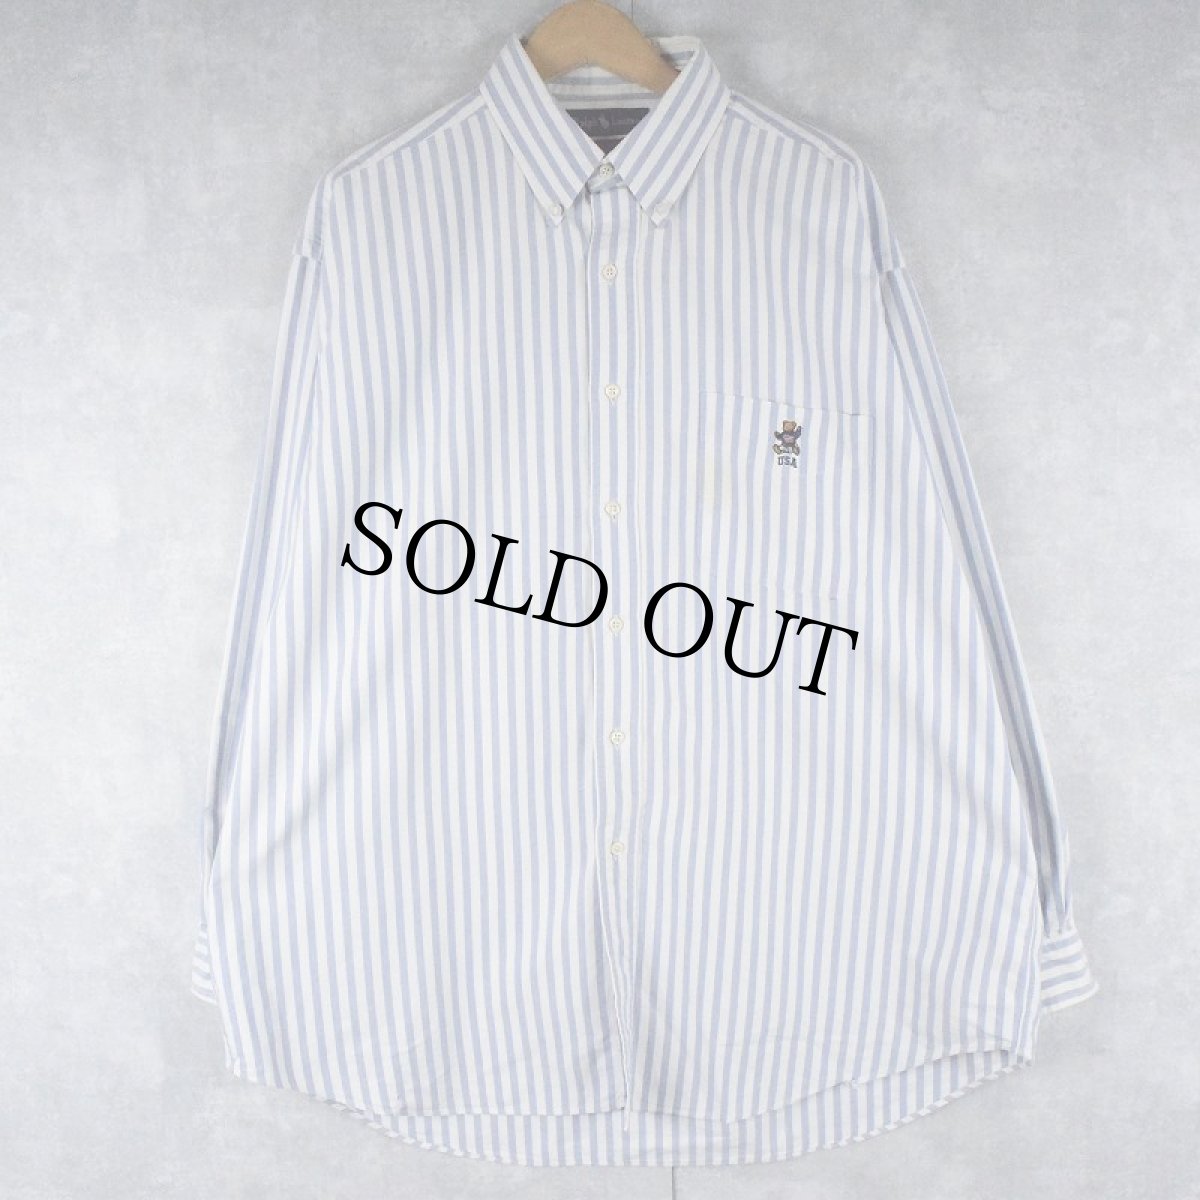 画像1: Ralph Lauren "BIG SHIRT" ポロベア刺繍 ストライプ柄 コットンボタンダウンシャツ L (1)